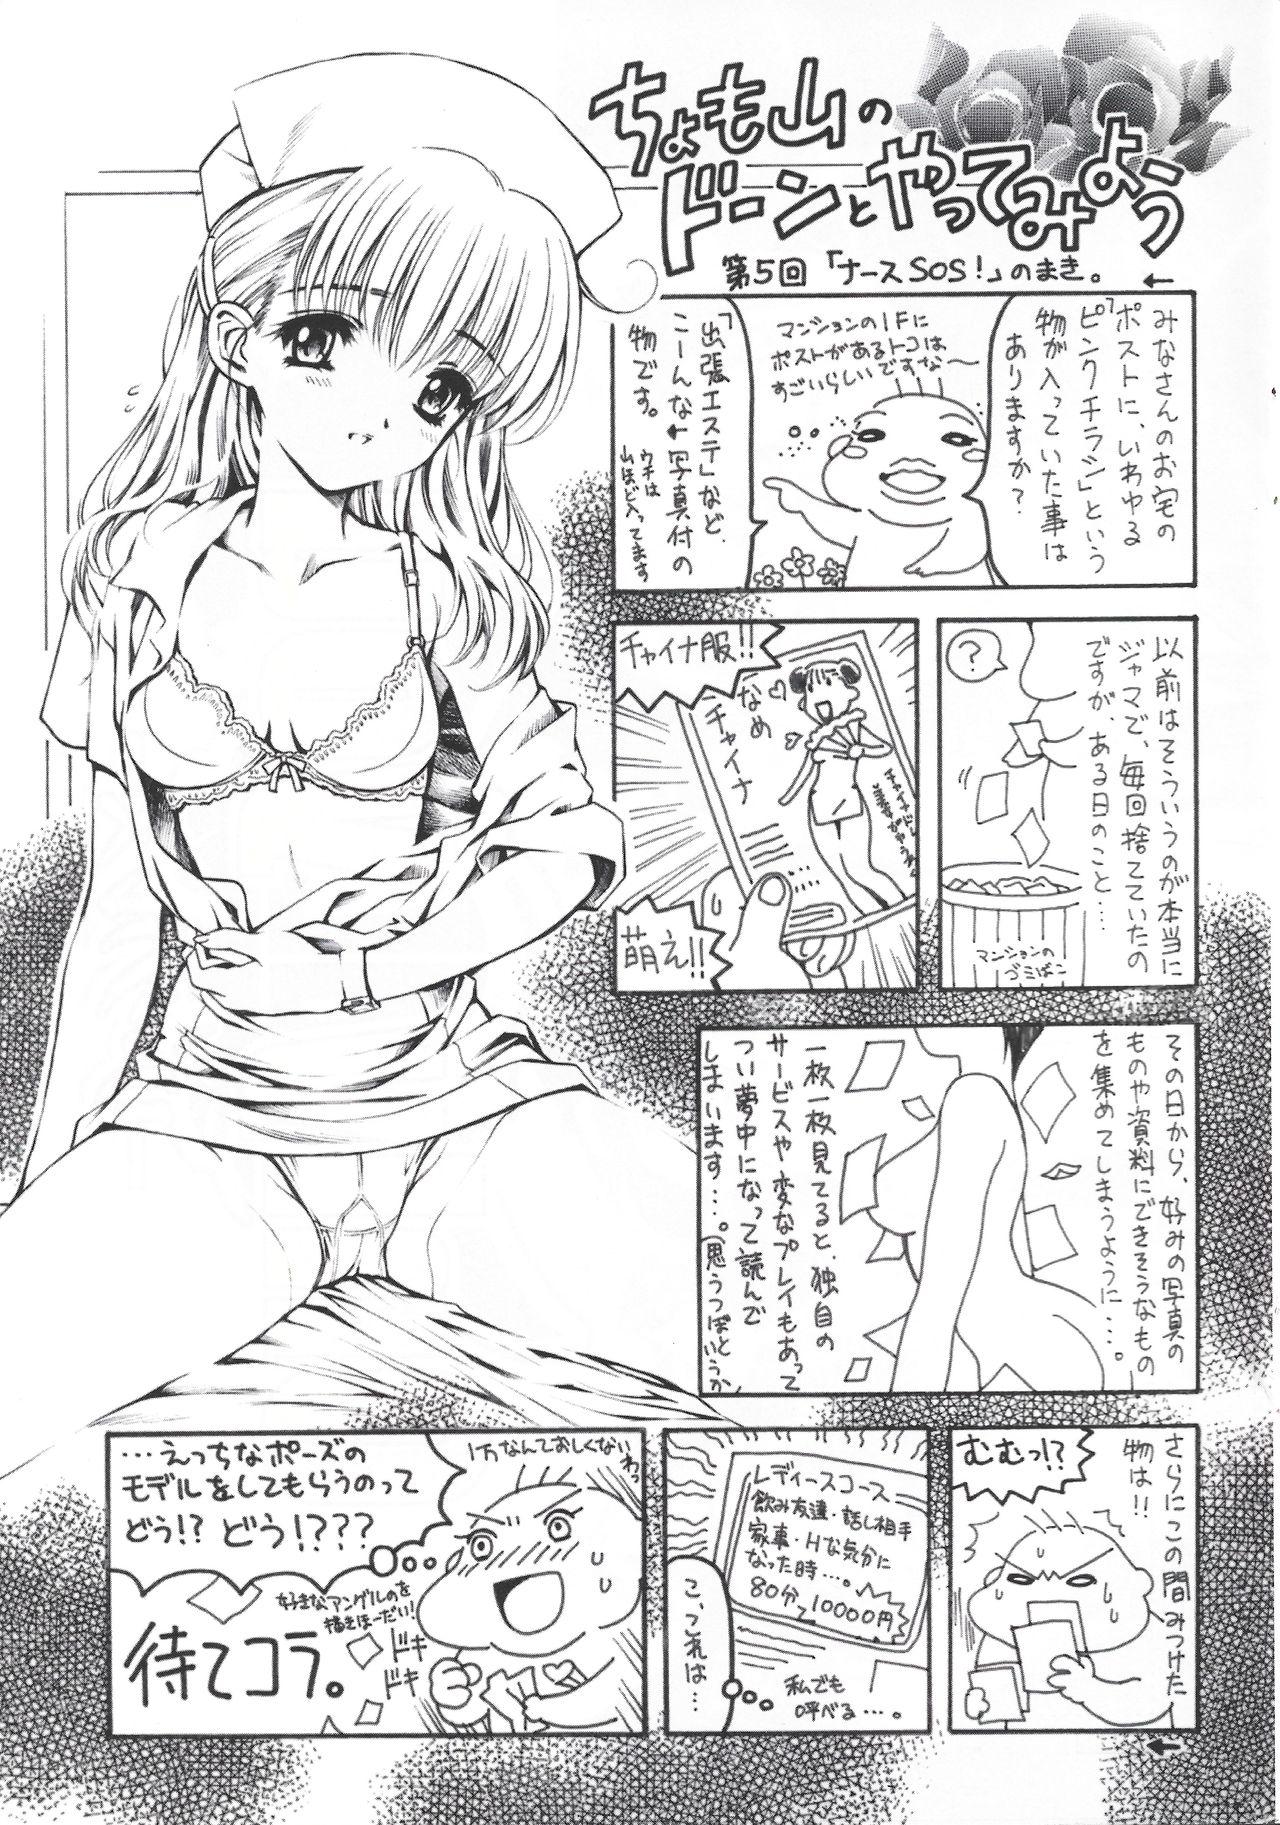 Arisu no Denchi Bakudan Vol. 17 17